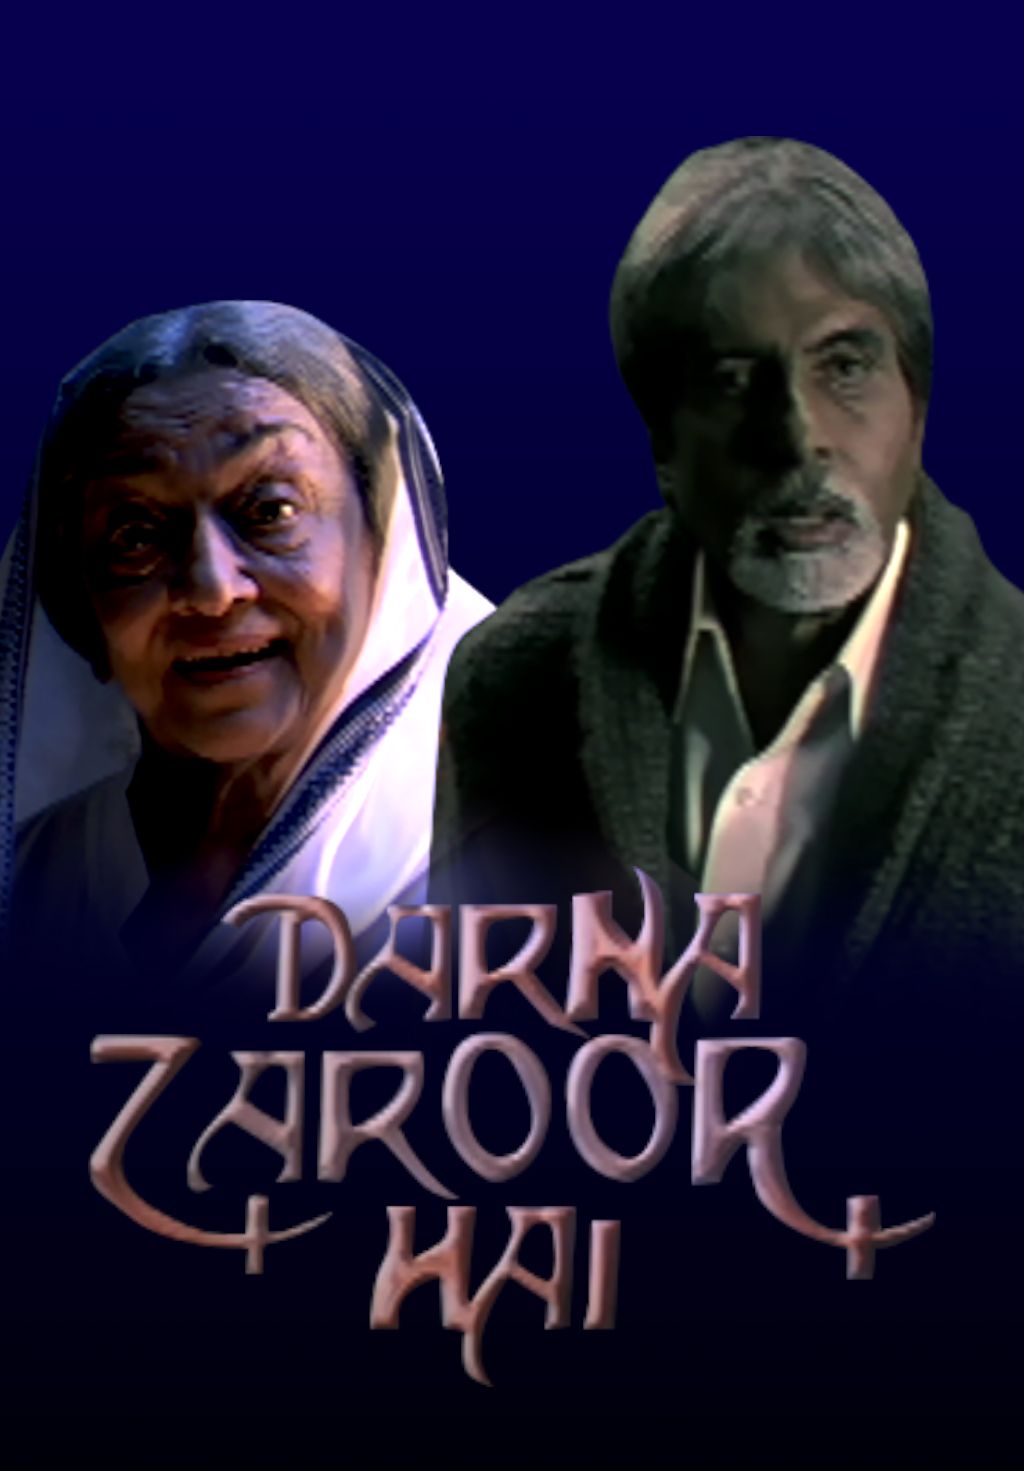 Darna Zaroori Hai